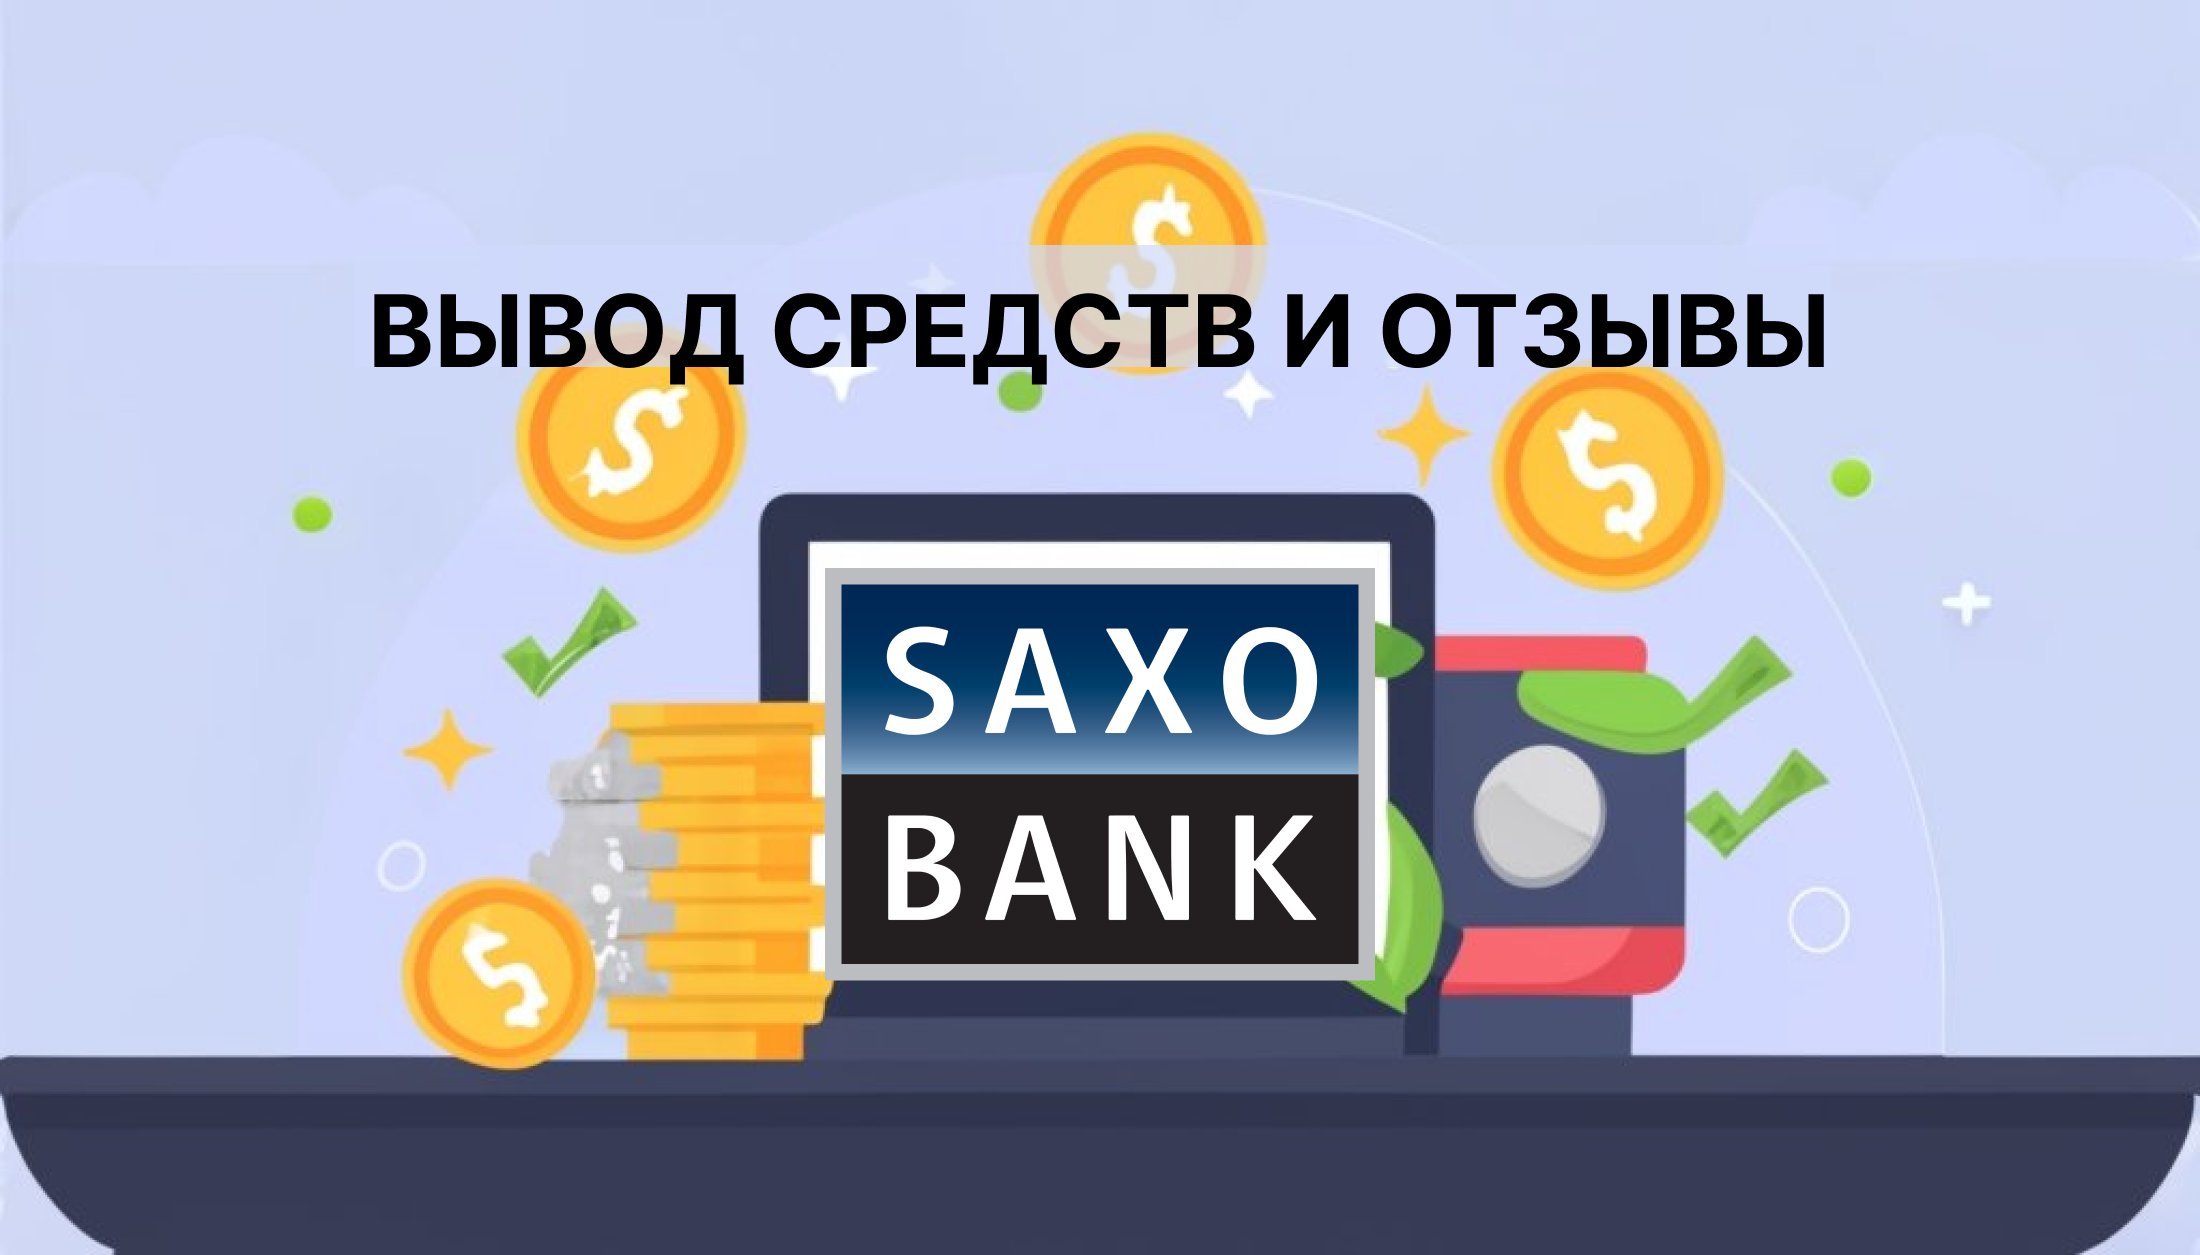 Saxo Bank вывод средств и отзывы